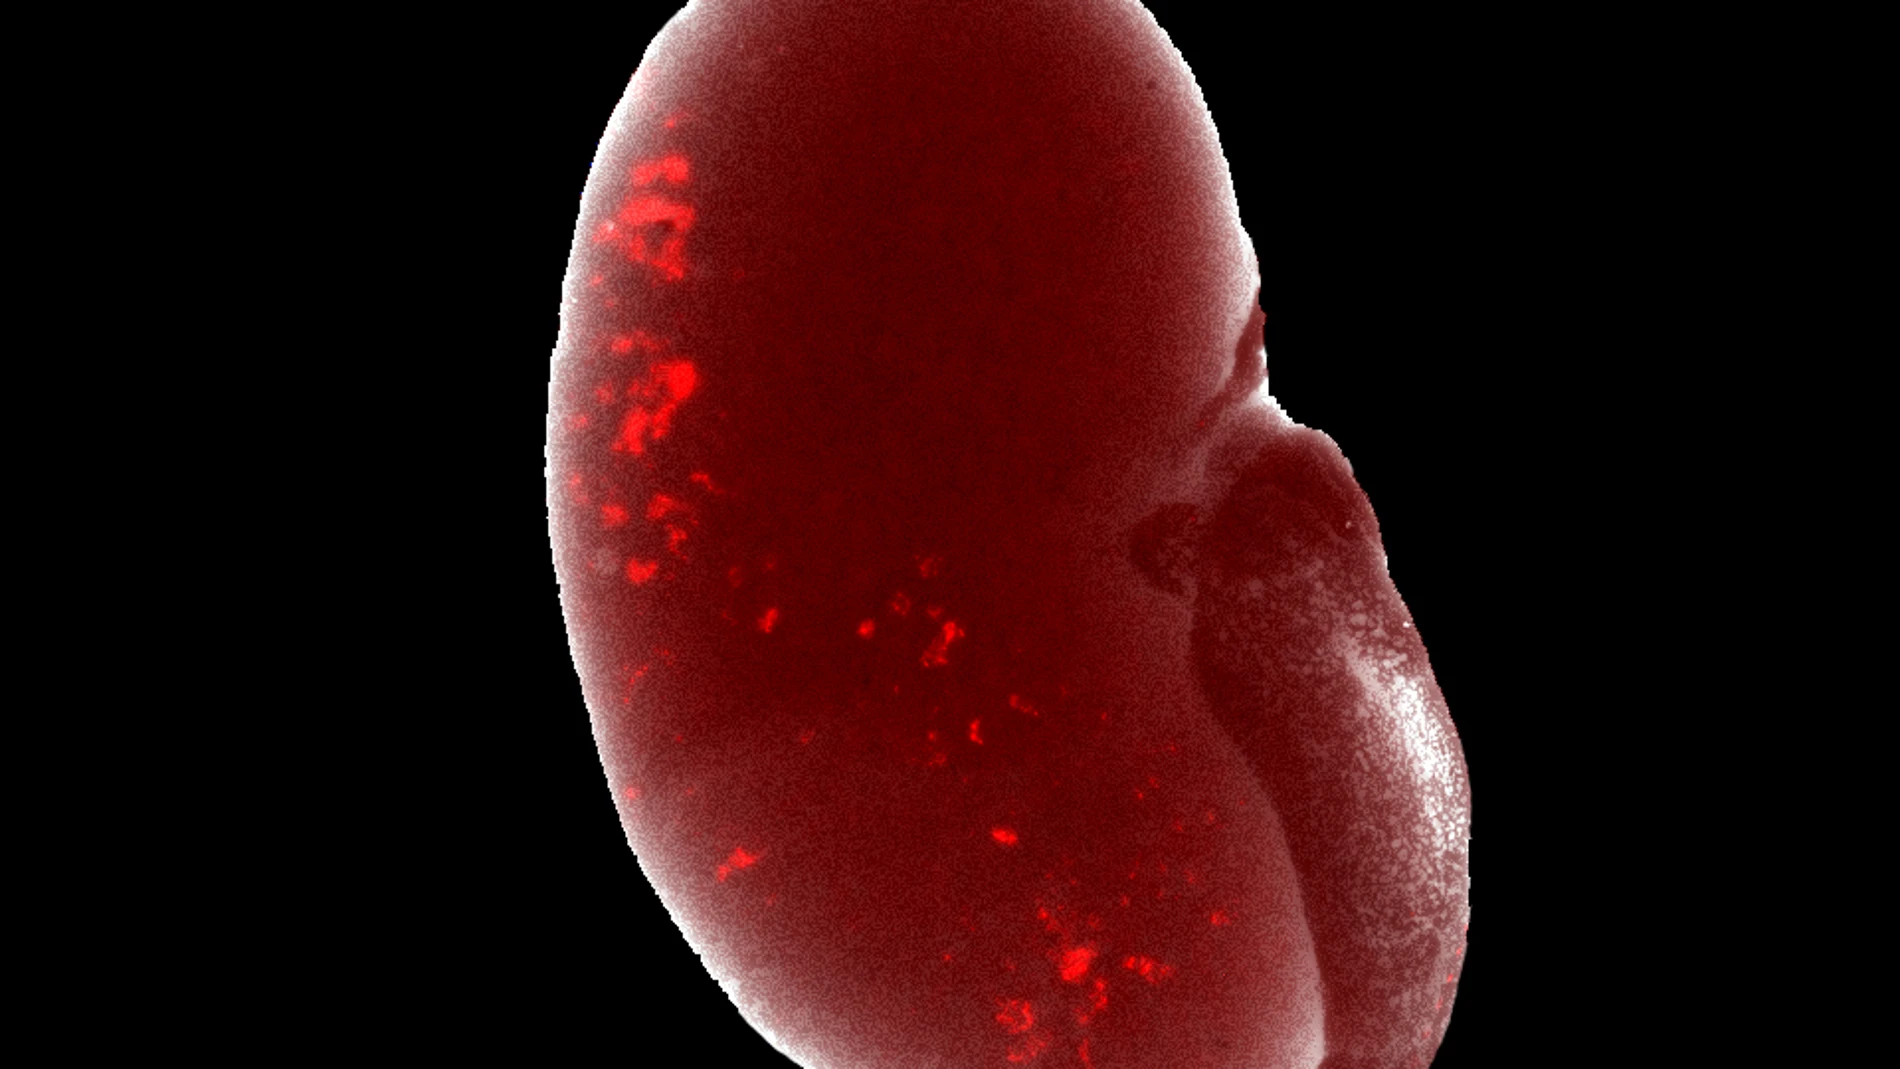 Células progenitoras renales de laboratorio (en rojo) tras ser trasplantadas se integran por completo